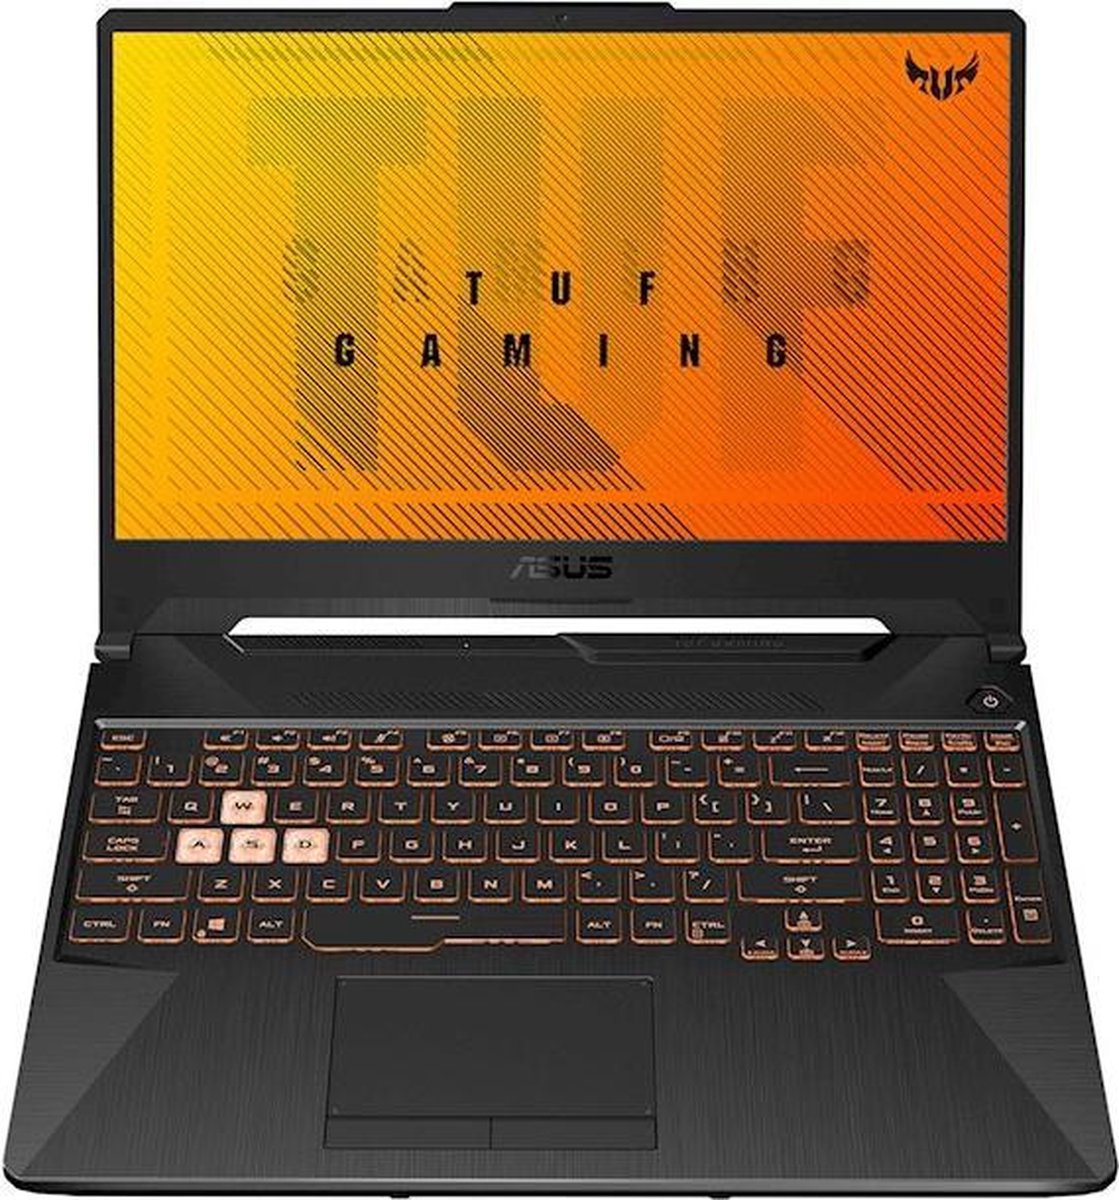 ASUS TUF F15 - Gaming laptop - 15.6 inch - ASUS